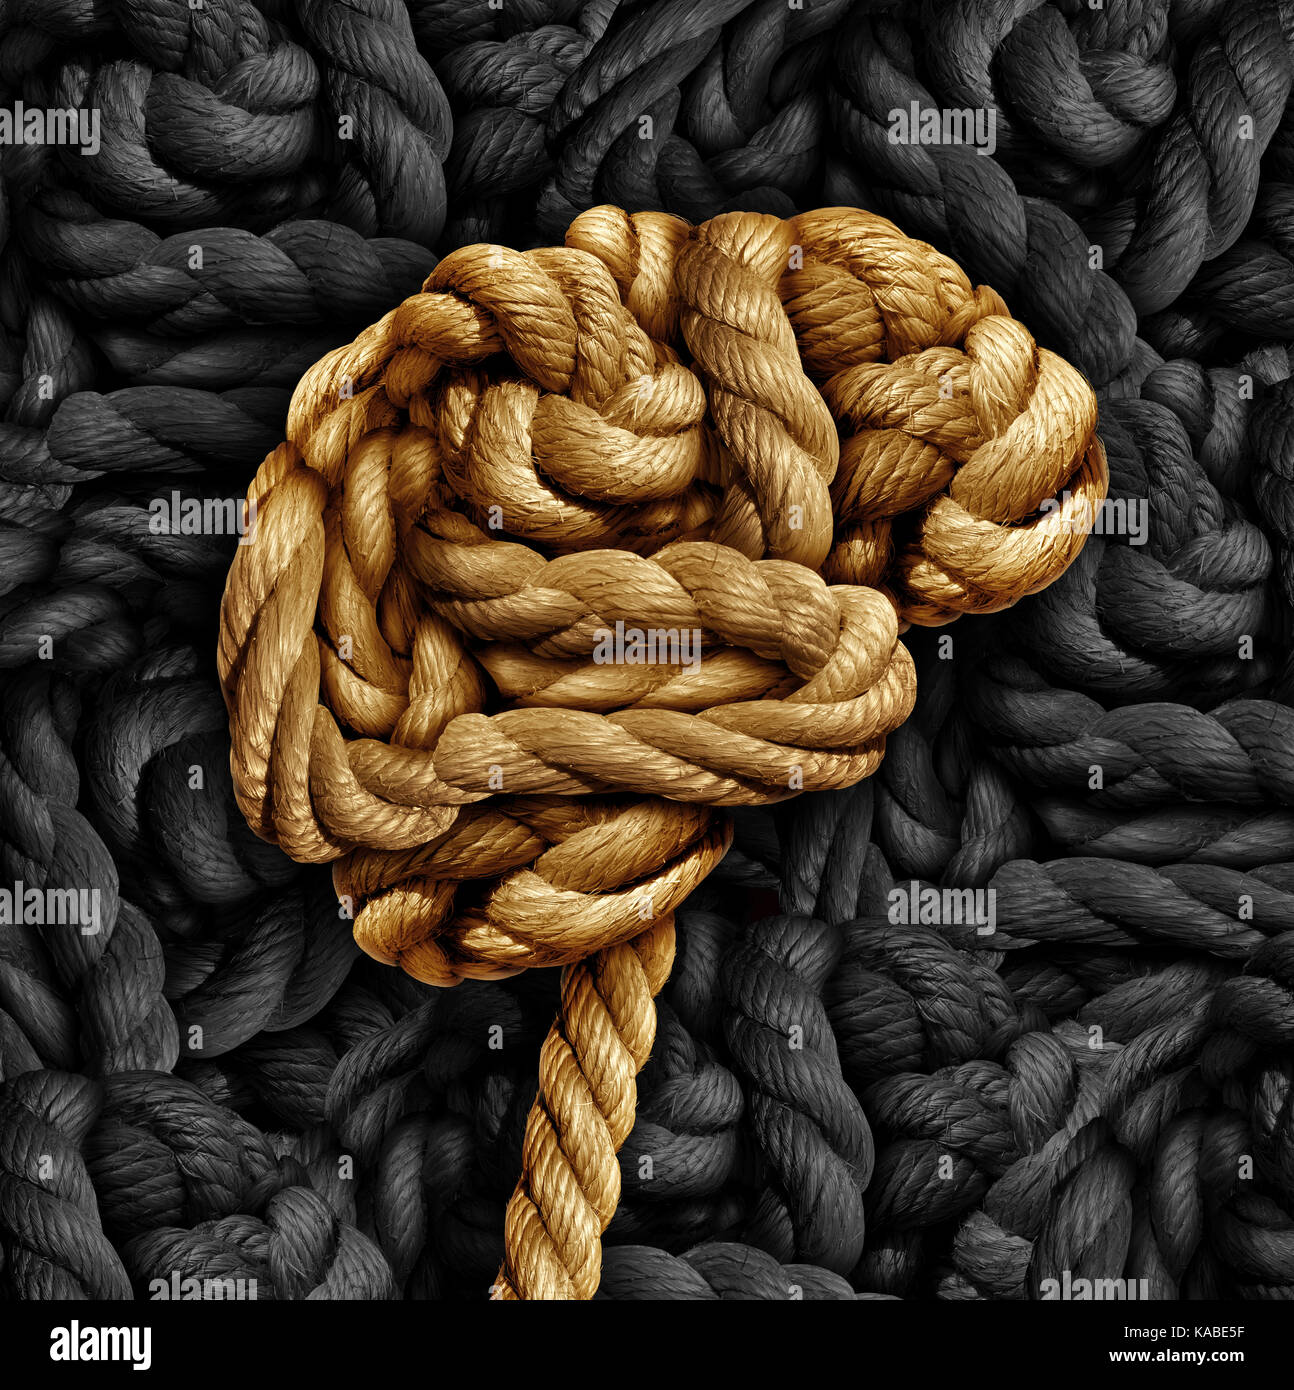 Malattia del cervello salute mentale concetto come una corda attorcigliata su un pensiero umano organo come un medico simbolo neurologiche per mente funzione. Foto Stock